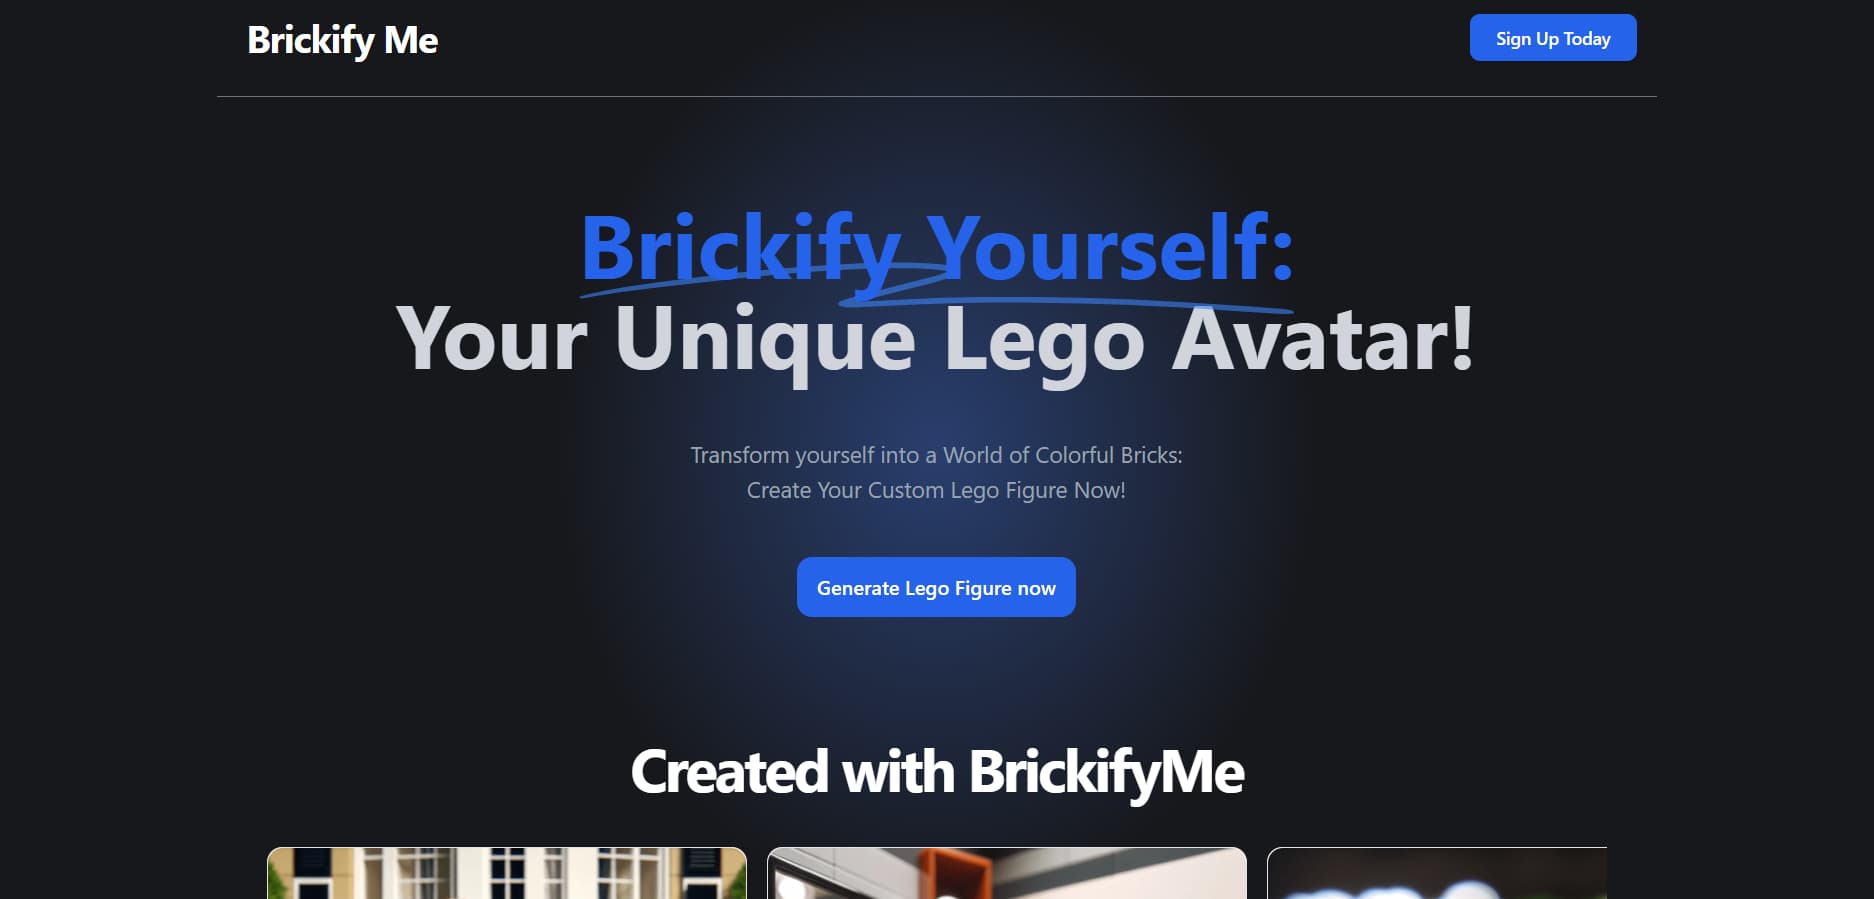 Brickify me